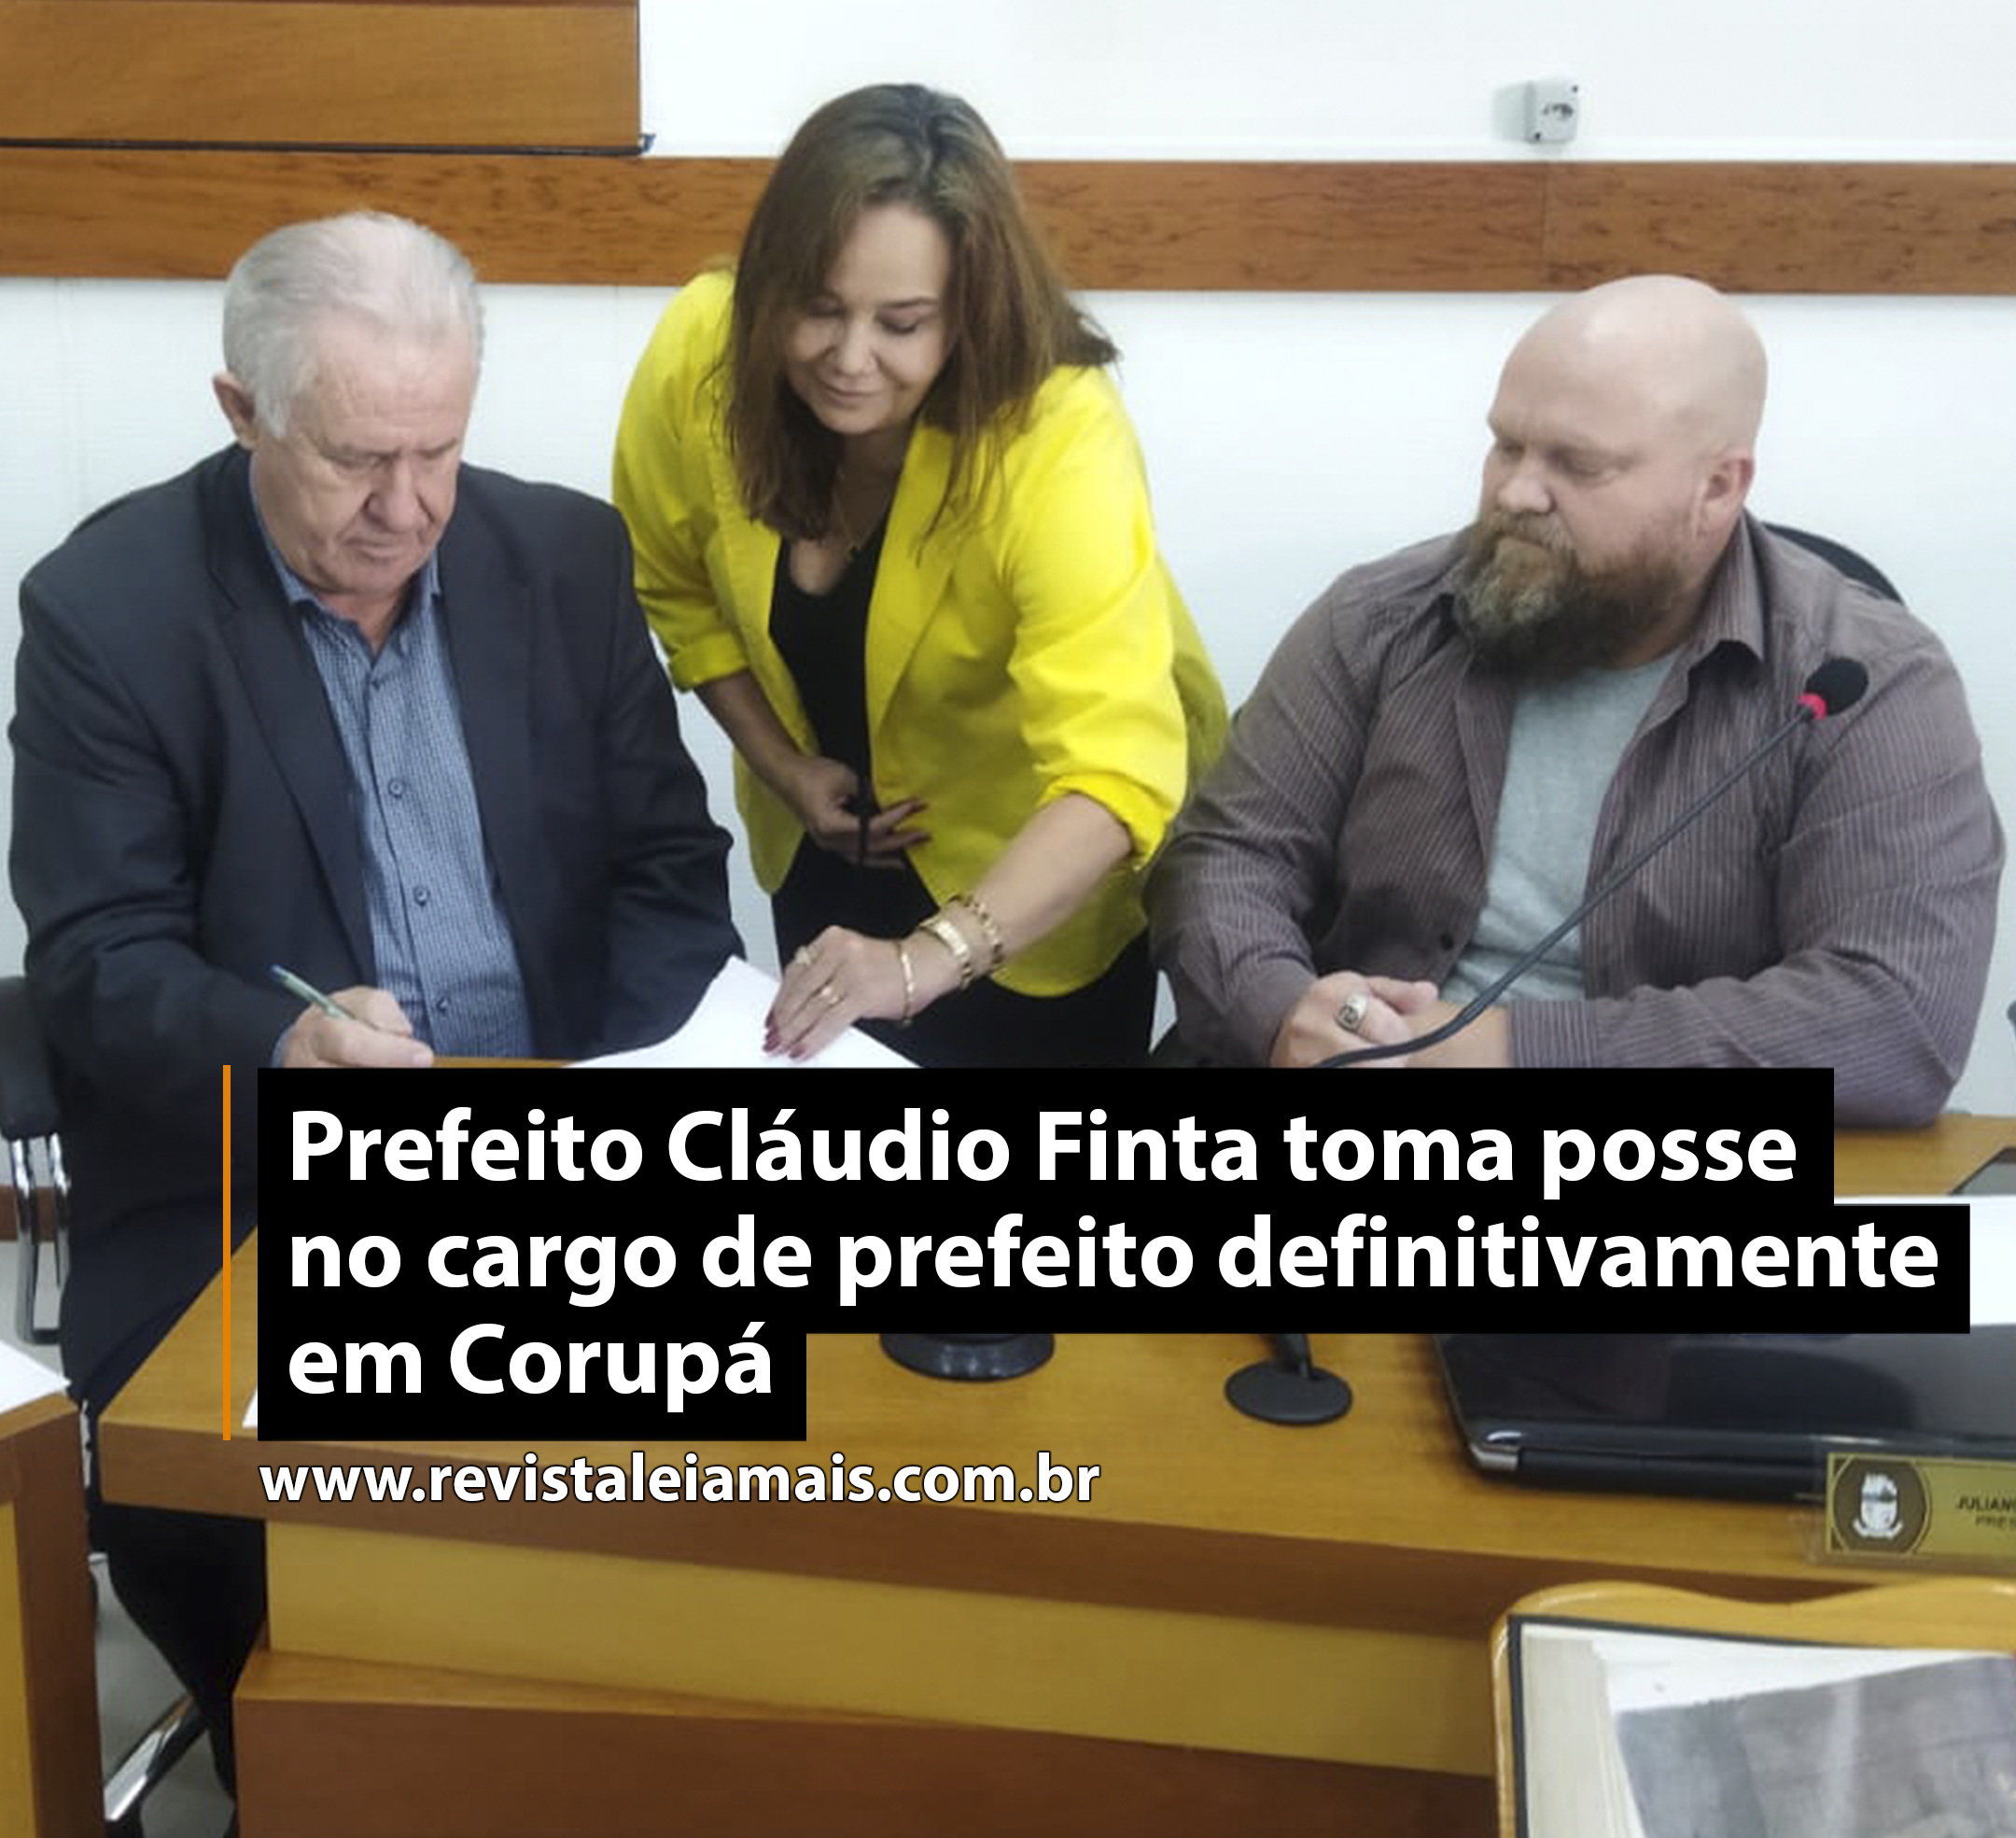 Prefeito Cláudio Finta toma posse no cargo de prefeito definitivamente em Corupá